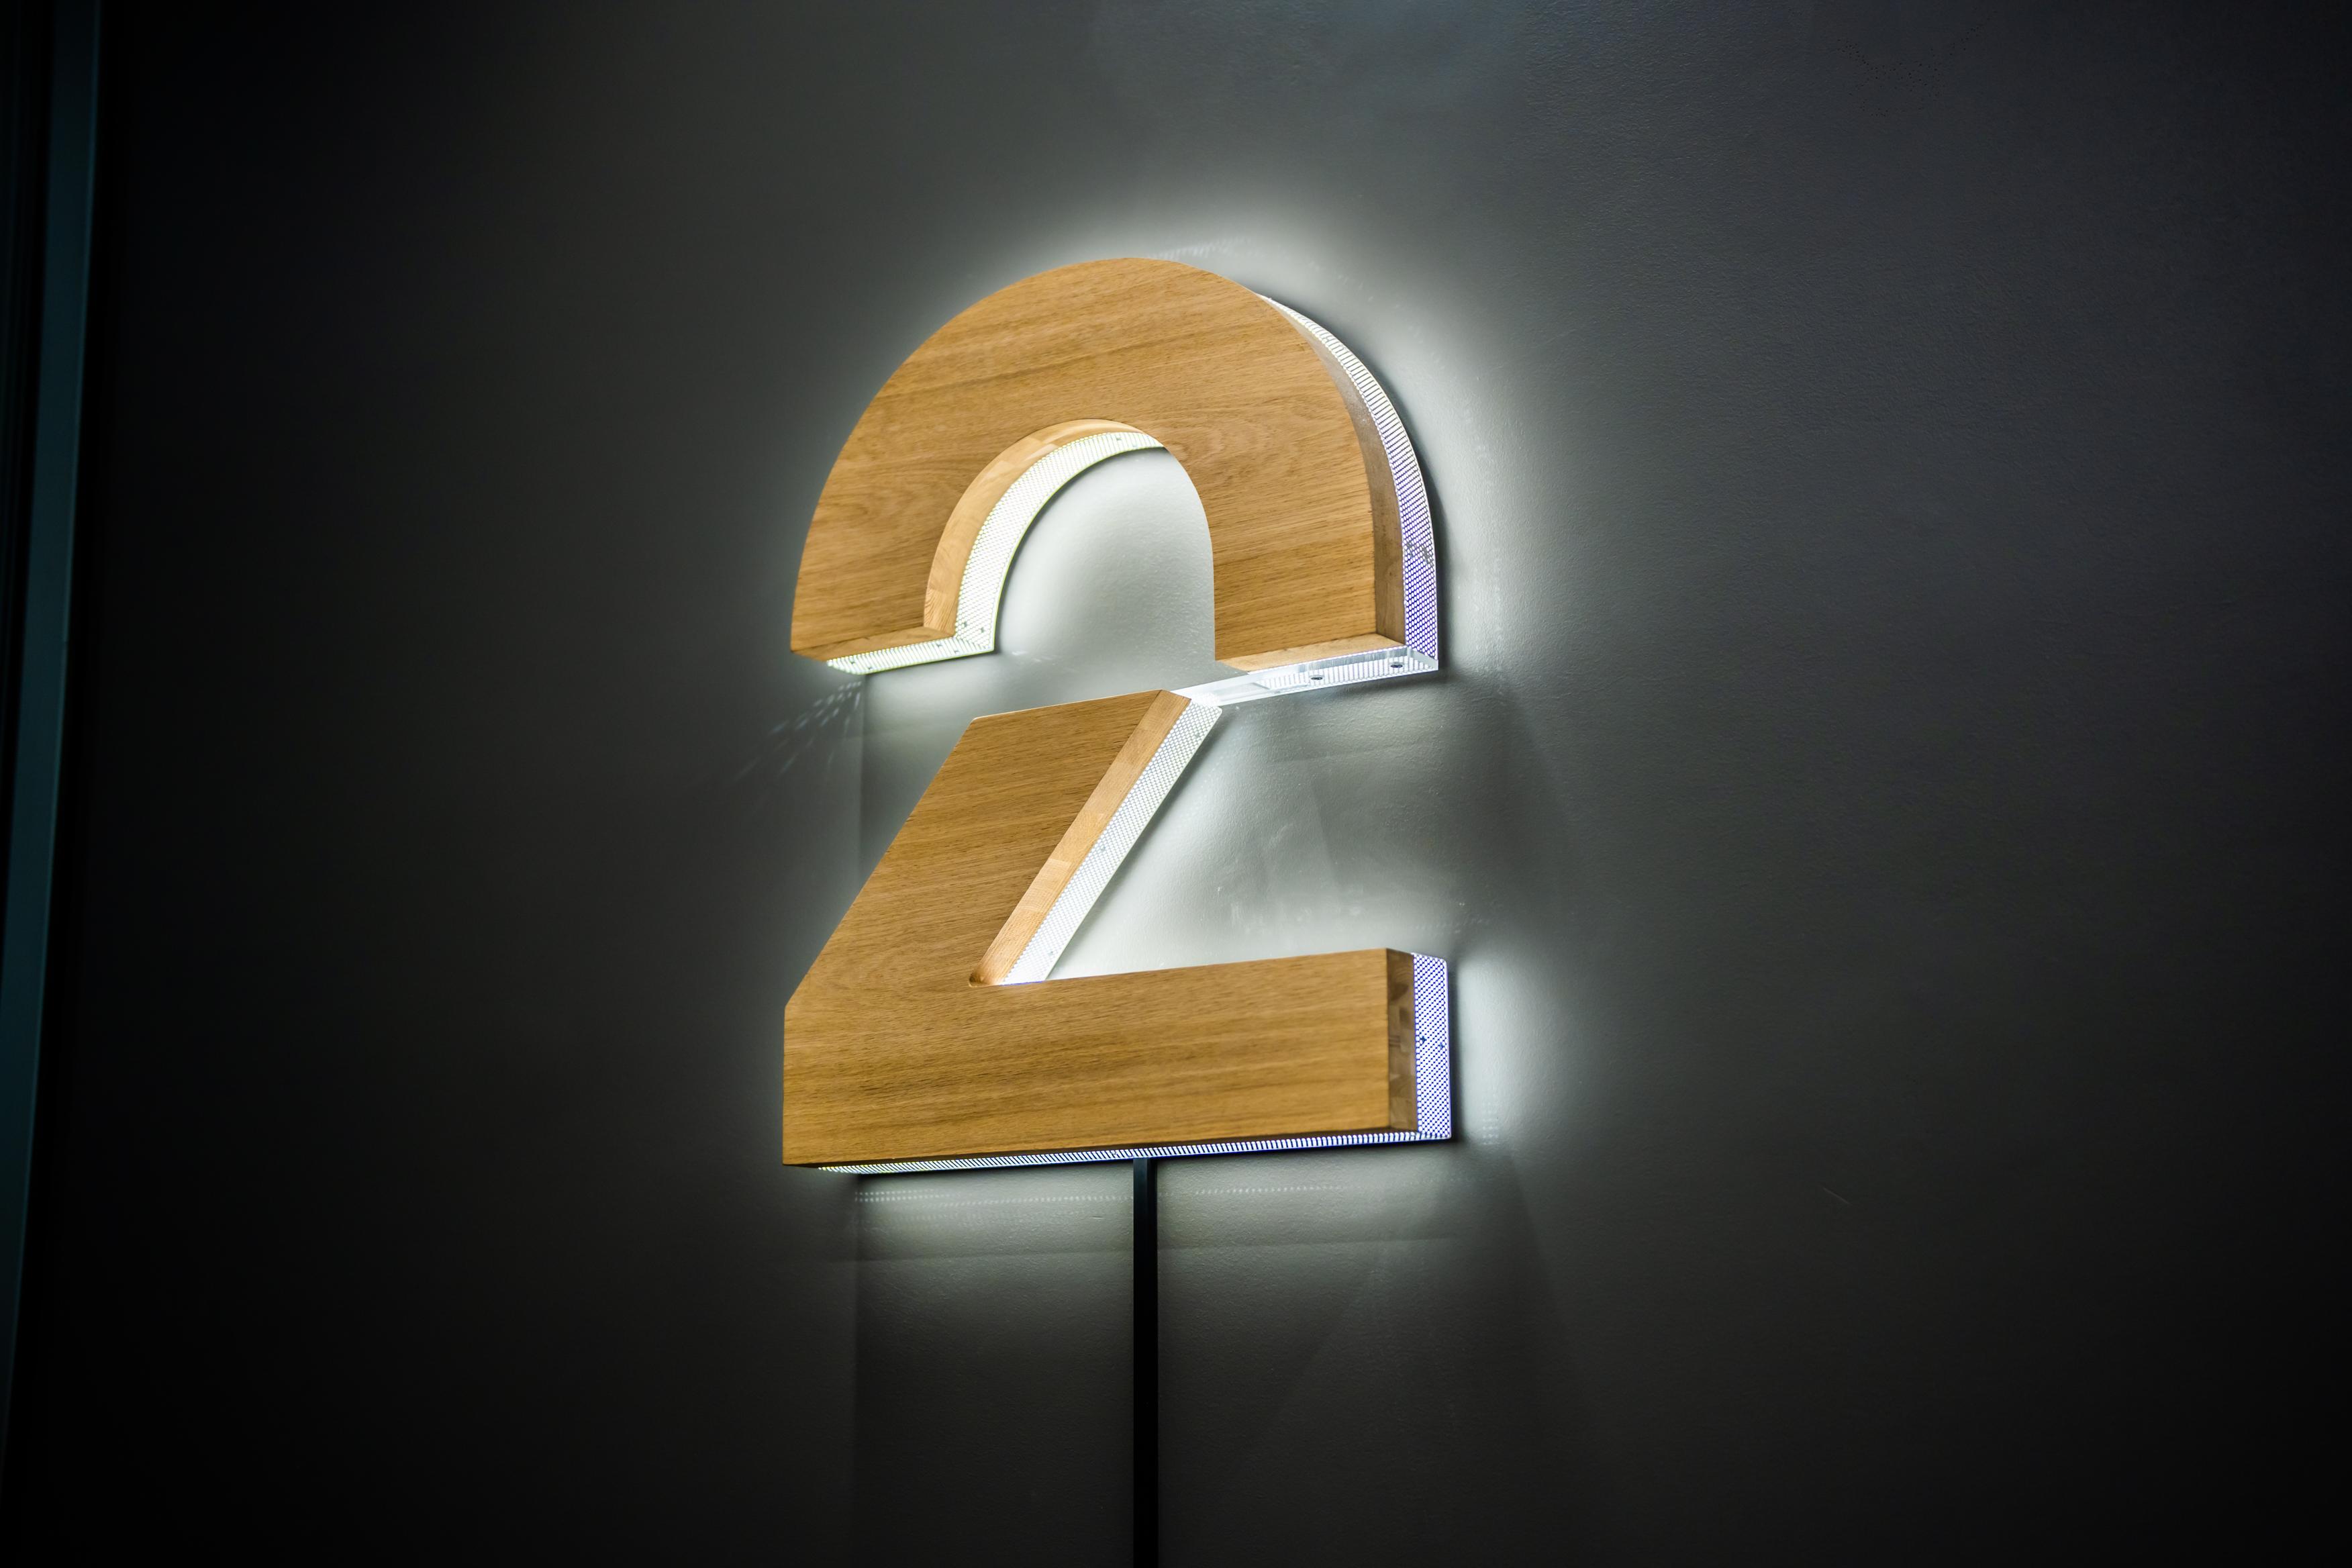 Lampe utformet som TV 2 sin logo